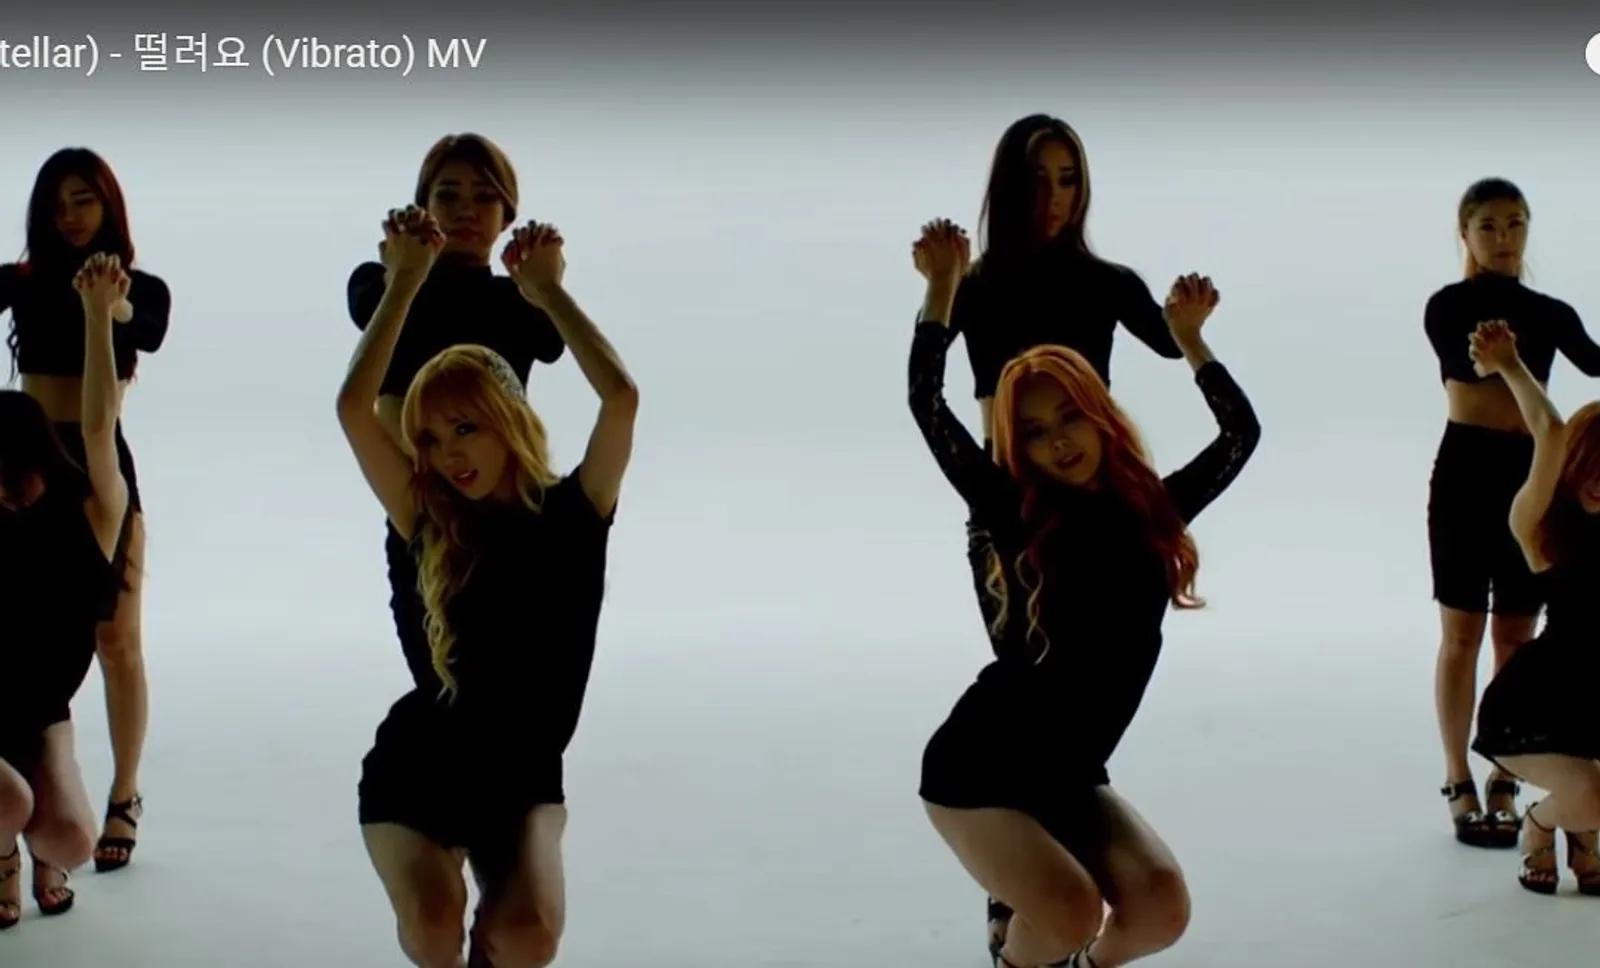 Vulgar dan Seronok, 7 Video Klip Kpop Ini Diboikot di Korea